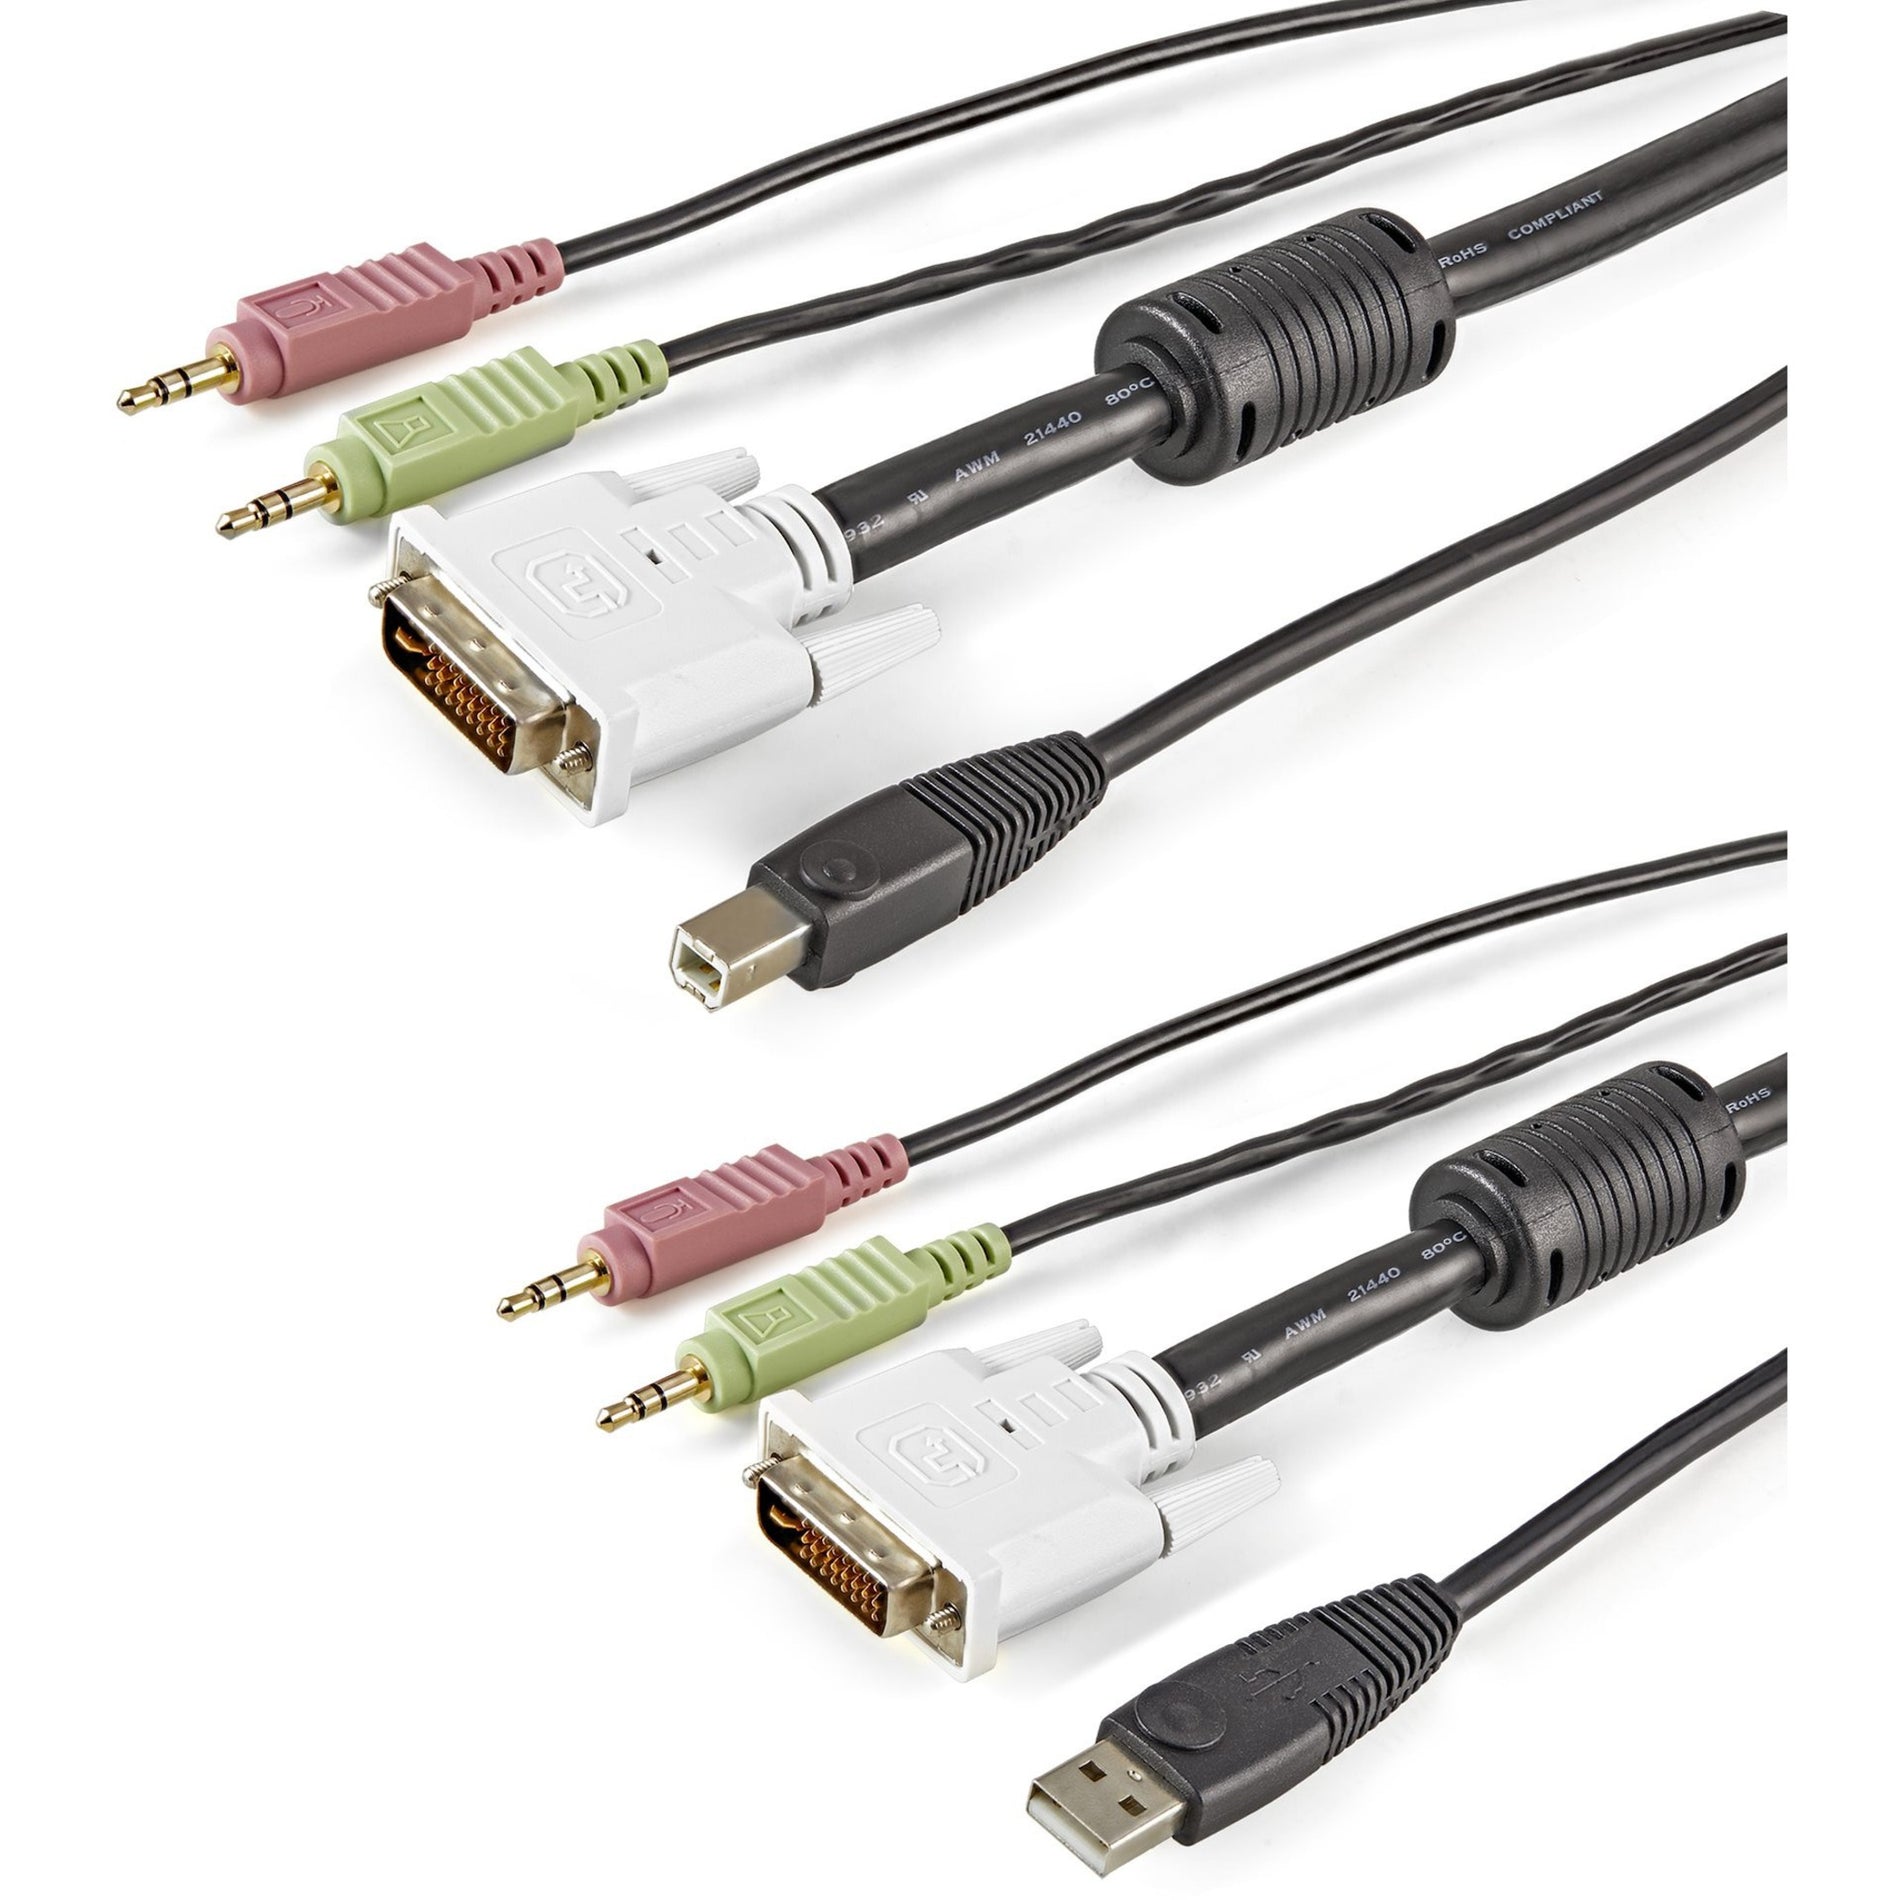 StarTech.com USBDVI4N1A10 10 ft 4-in-1 USB DVI KVM Kabel mit Audio Kupferleiter unterstützte Auflösung von 1920 x 1200 Schwarz